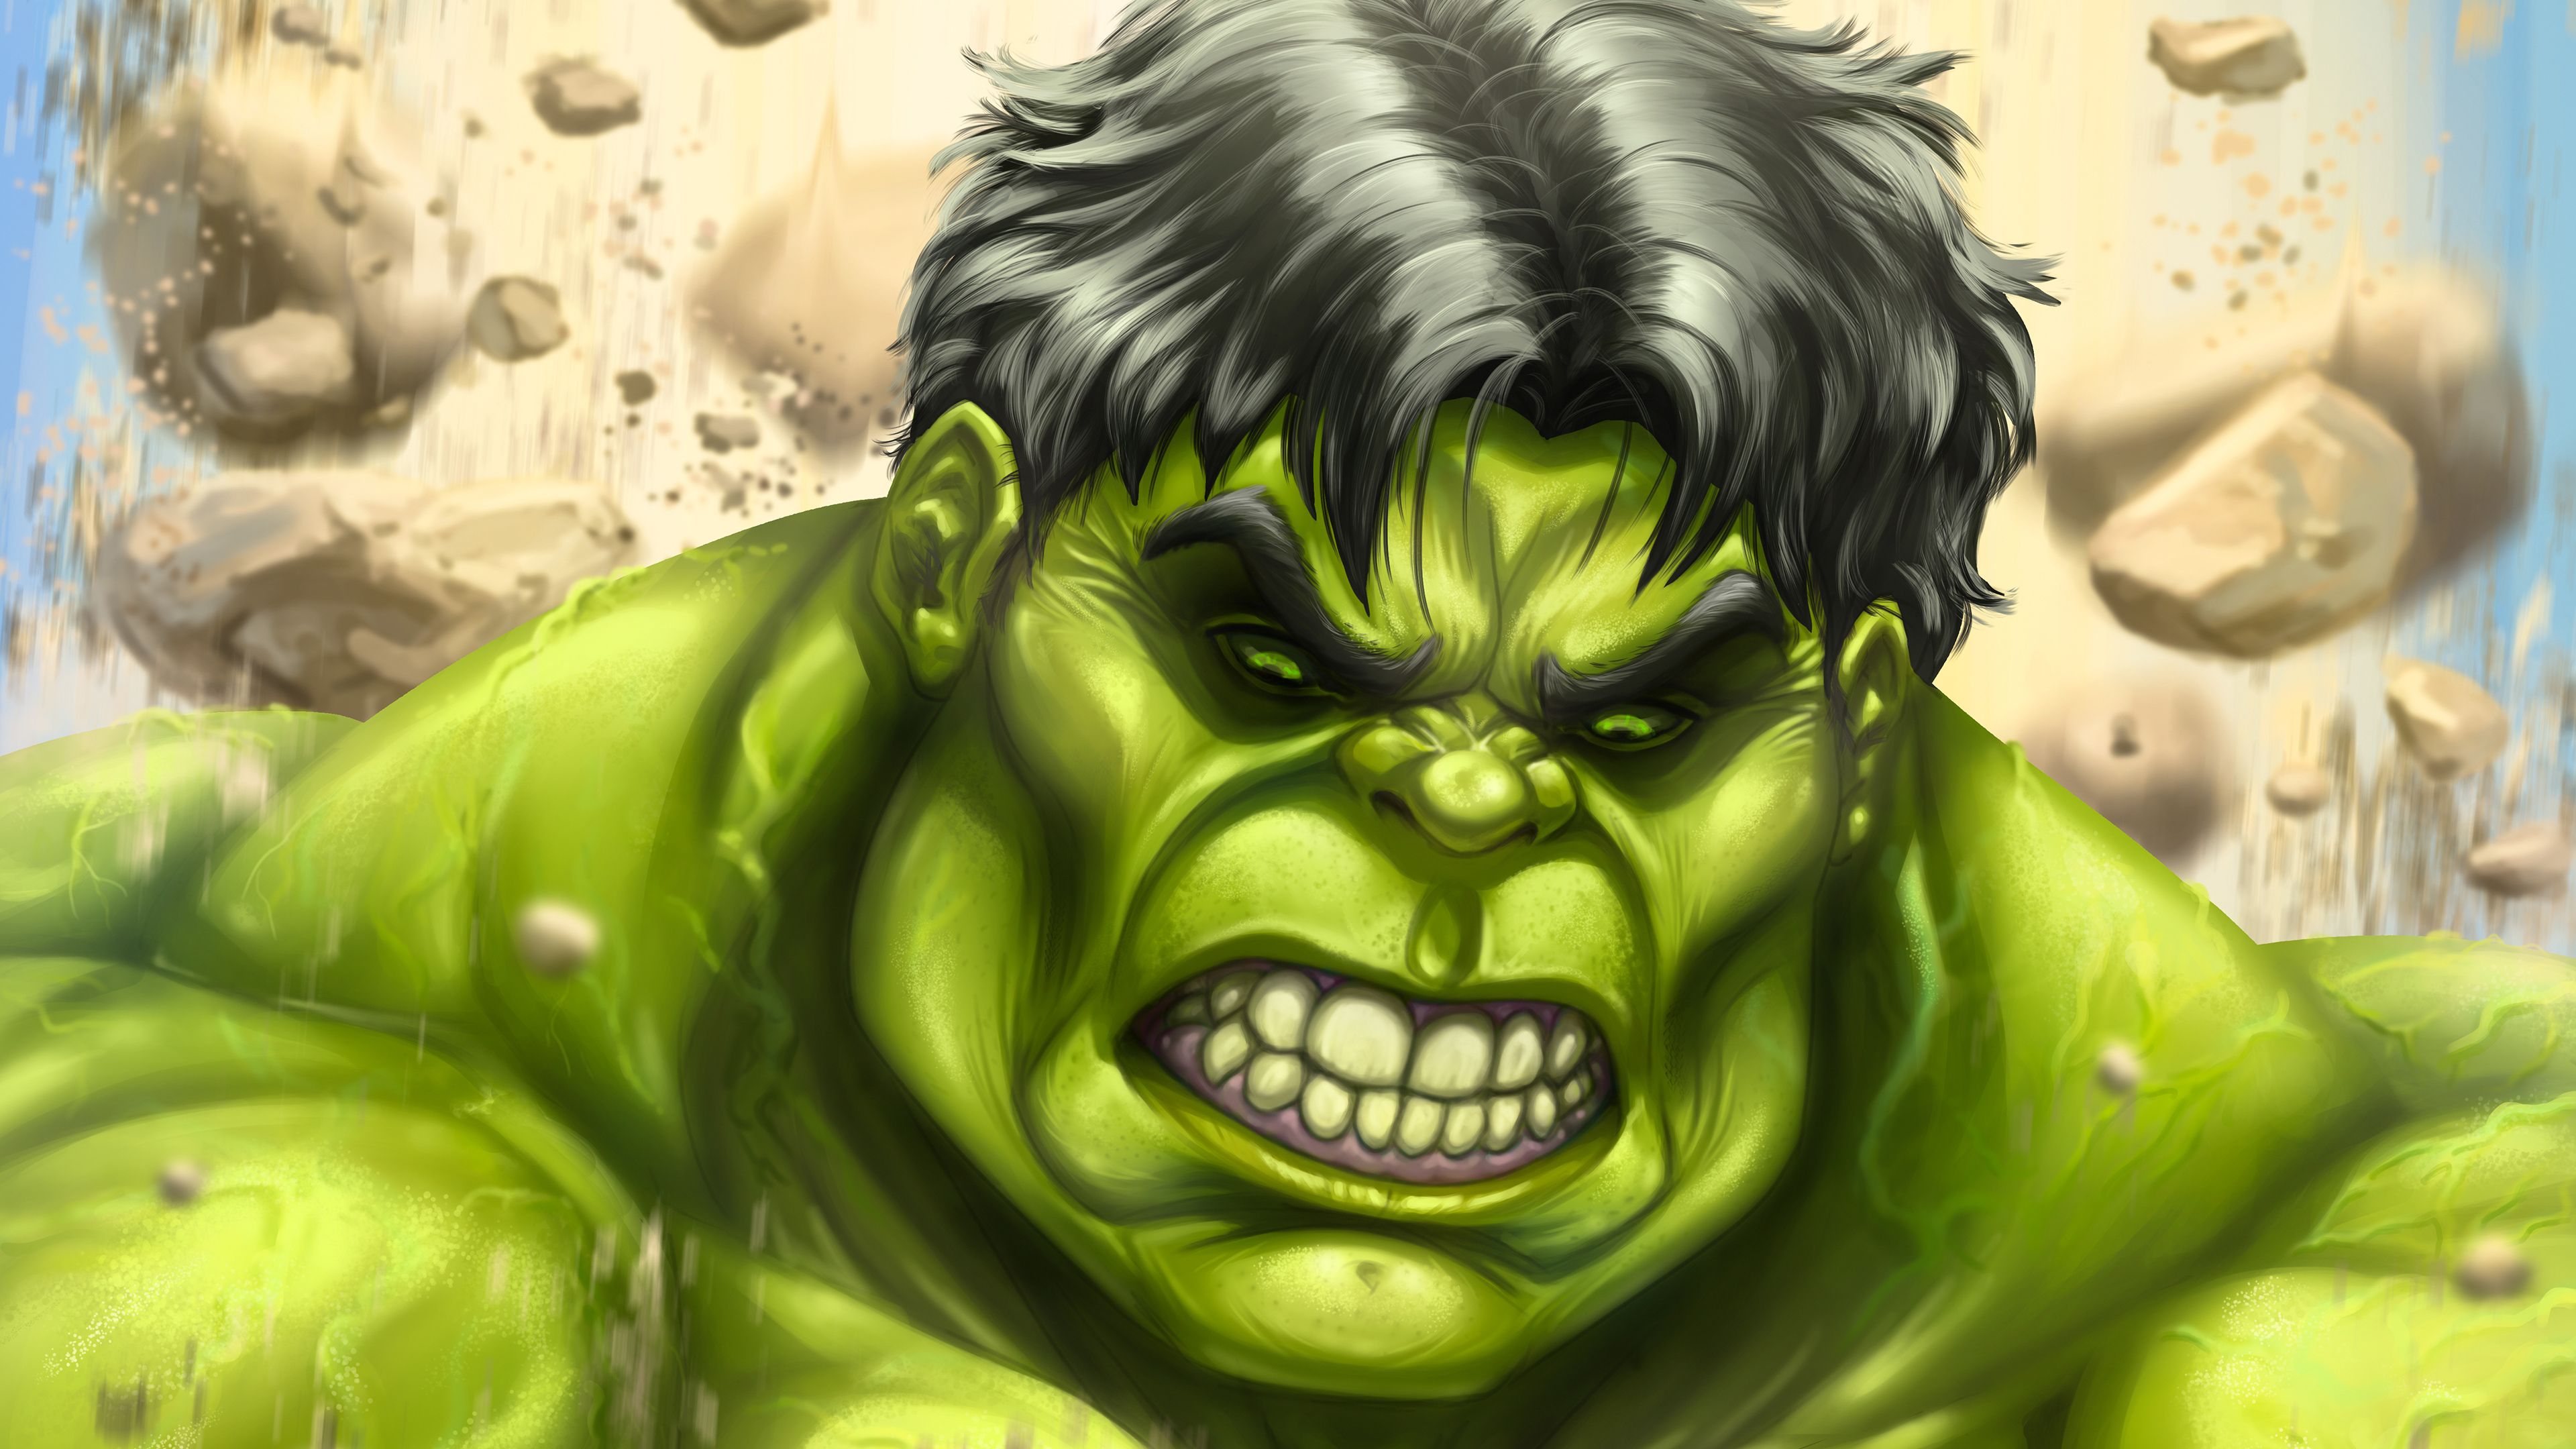 The Incredibles Hulk Art 4k